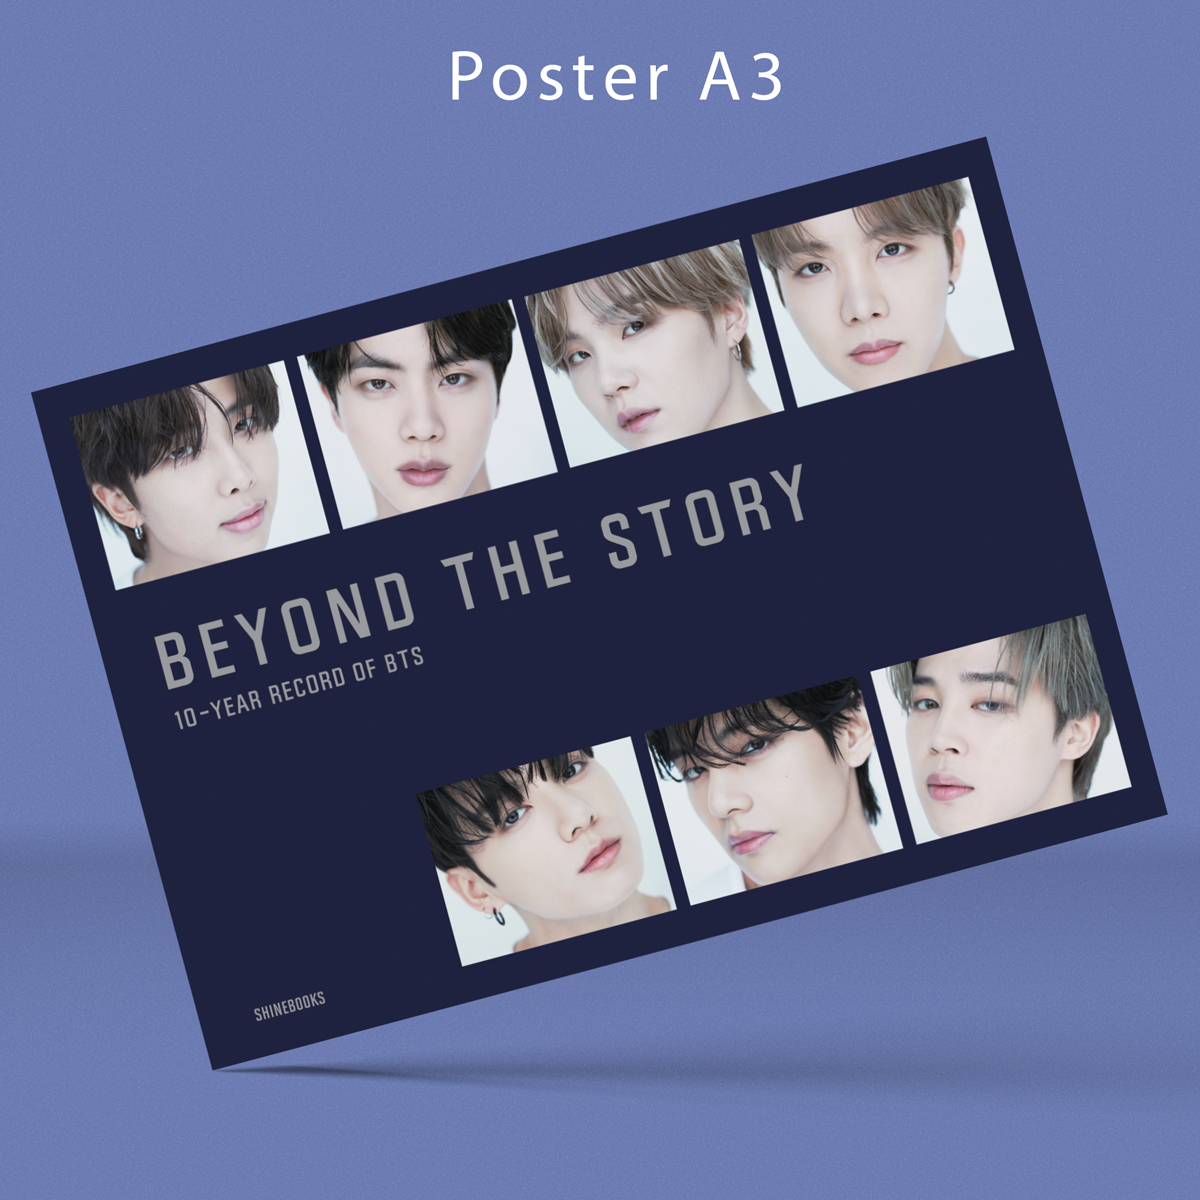 10-Year Record Of BTS - Beyond The Story - Bìa Cứng Độc Quyền - Tặng Kèm 1 PET Bookmark 8 Photo Cards 1 Poster A3 1 Bình Nước BTS 600 ml PDF